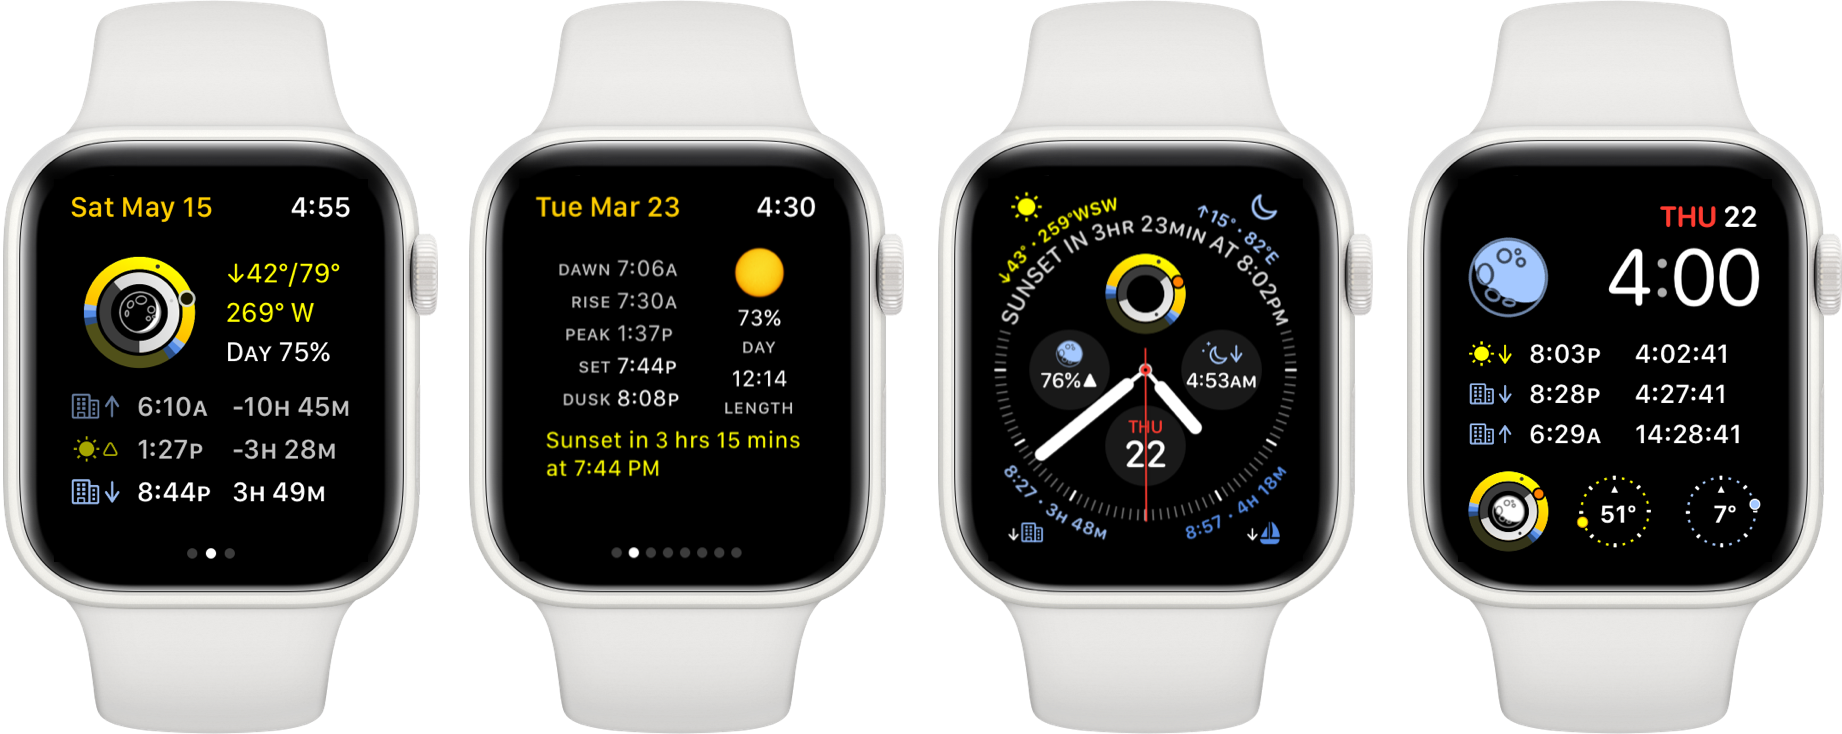 Sundial Apple Watch App Screenshots